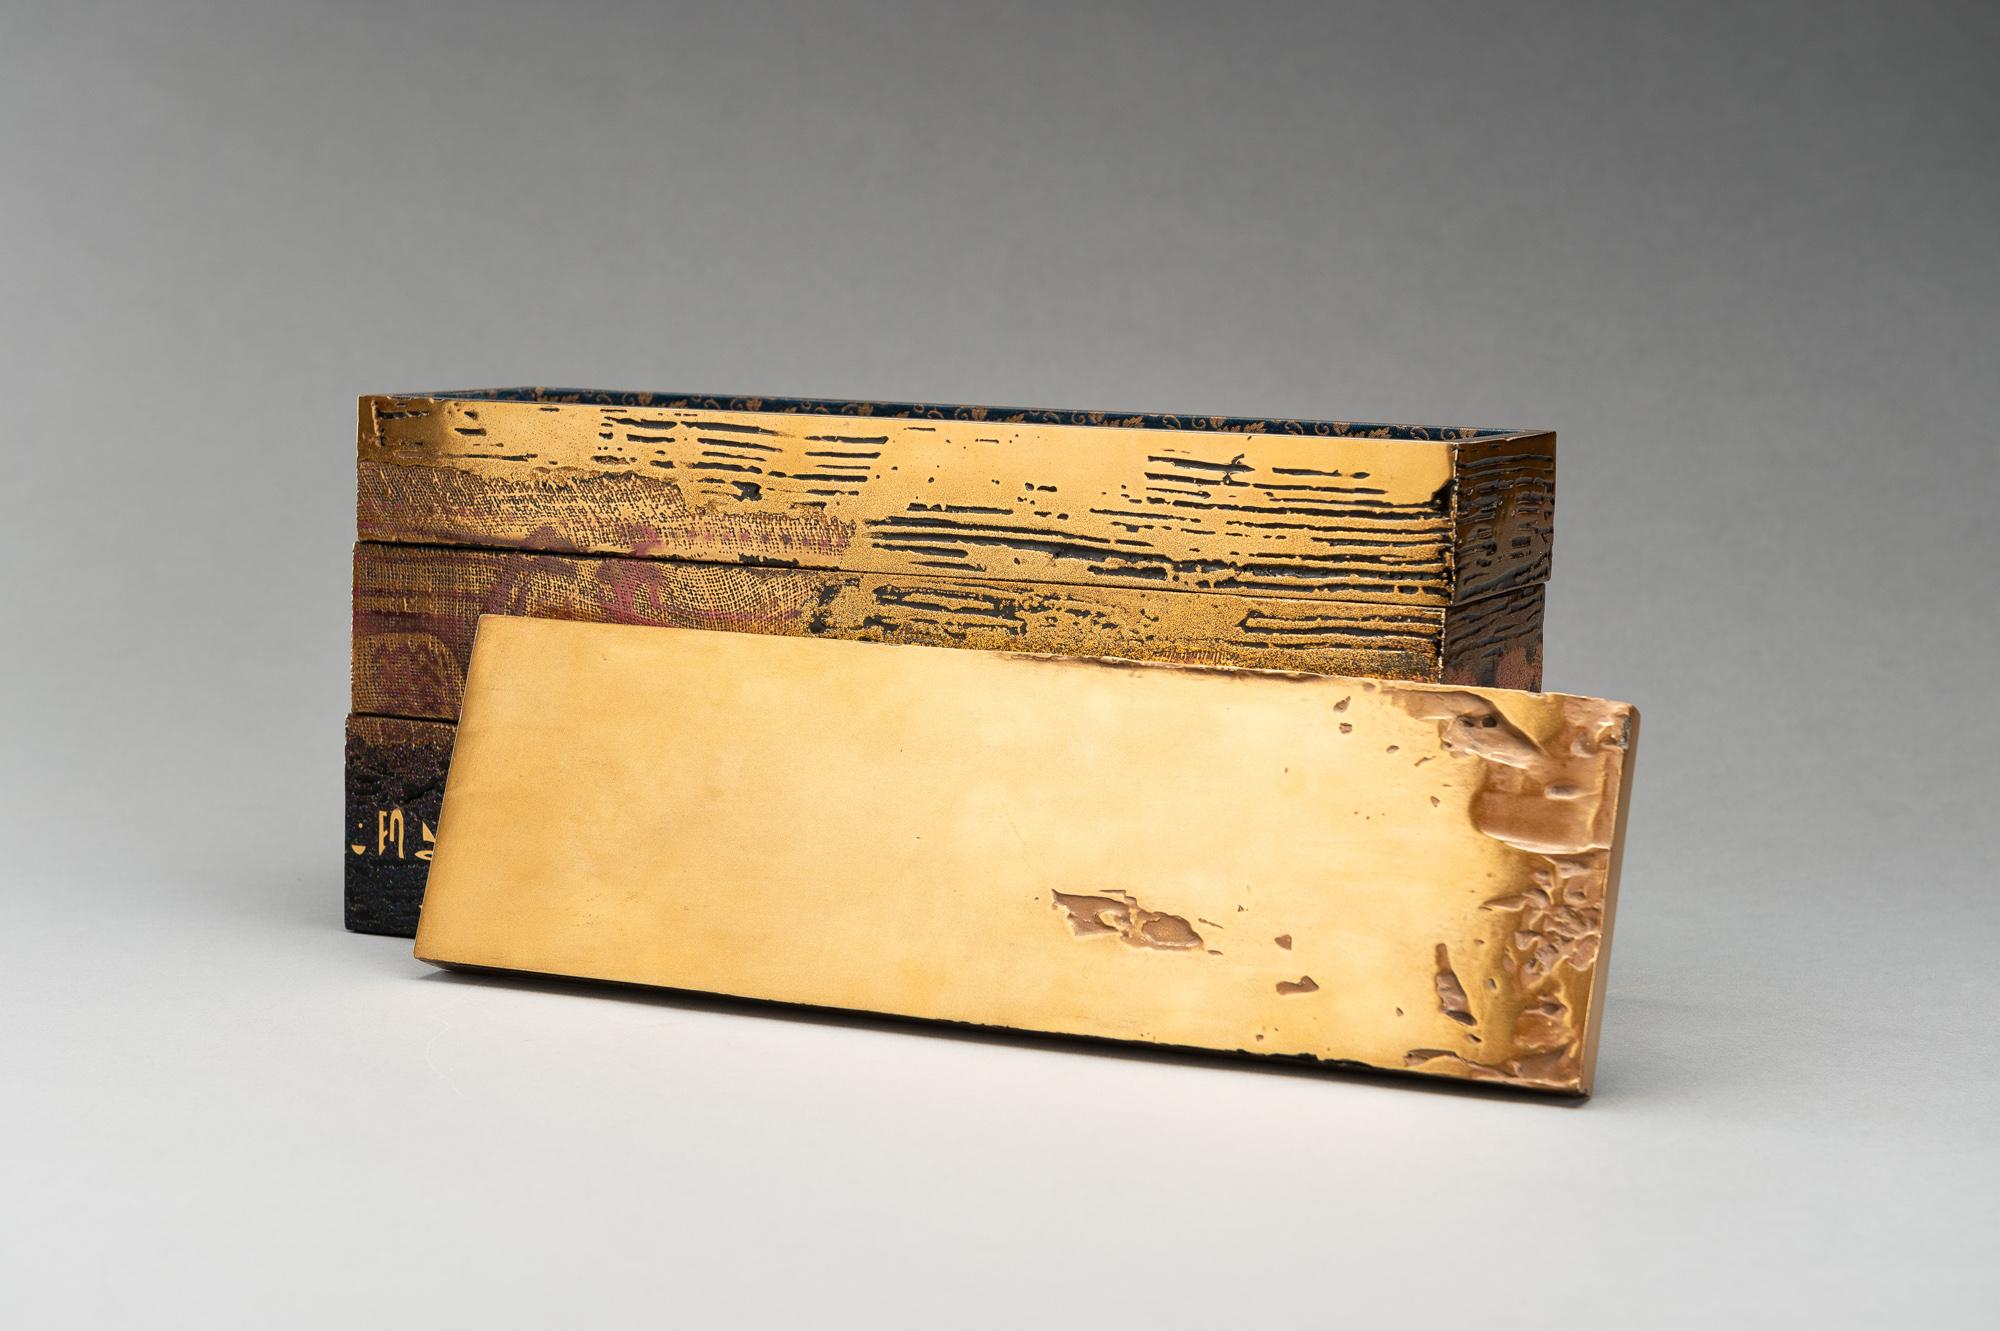 Eine außergewöhnliche, längliche, dreistöckige Lackbox mit Deckel, die an eine Bento-Box erinnert, von Hiroshi Hayashi (1967). Überzogen mit glänzendem Gold und schwarzem Lack mit roten Akzenten. Die Oberfläche mit verschiedenen Texturen, die